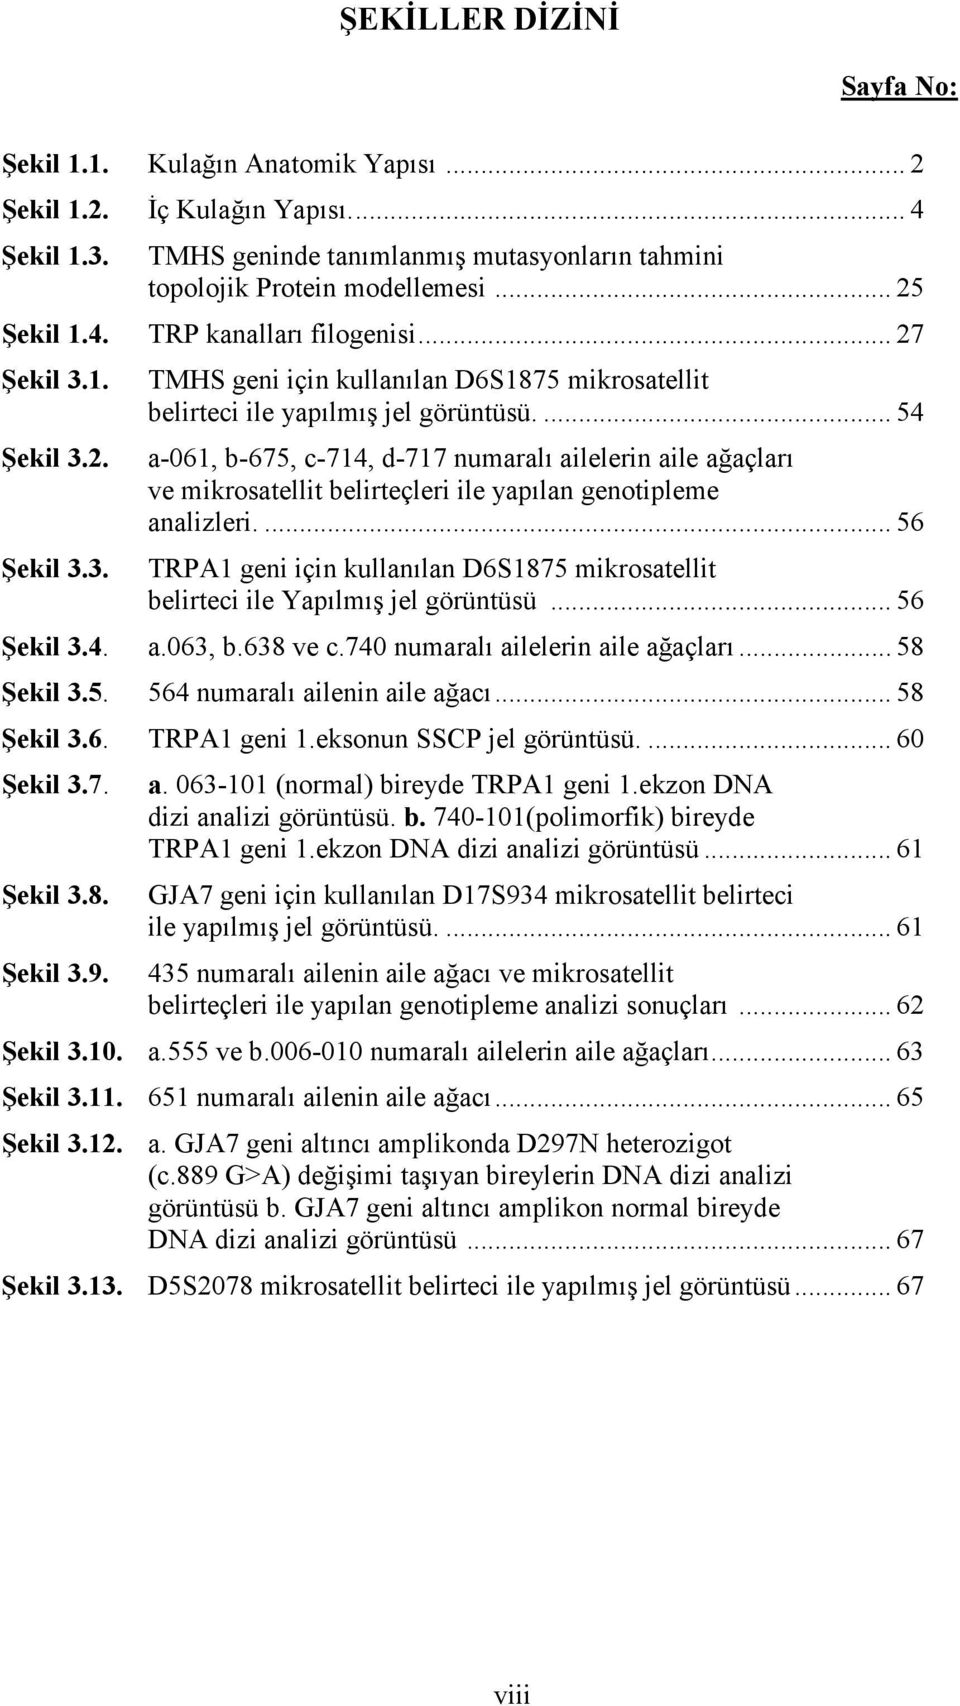 ... 54 a-061, b-675, c-714, d-717 numaralı ailelerin aile ağaçları ve mikrosatellit belirteçleri ile yapılan genotipleme analizleri.